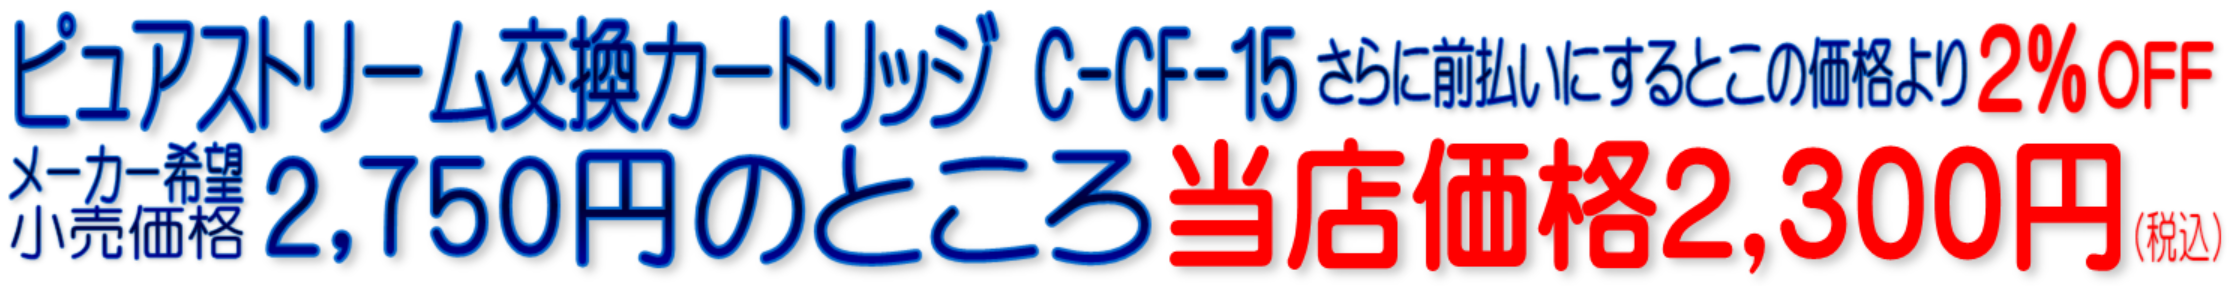 C-CF-15